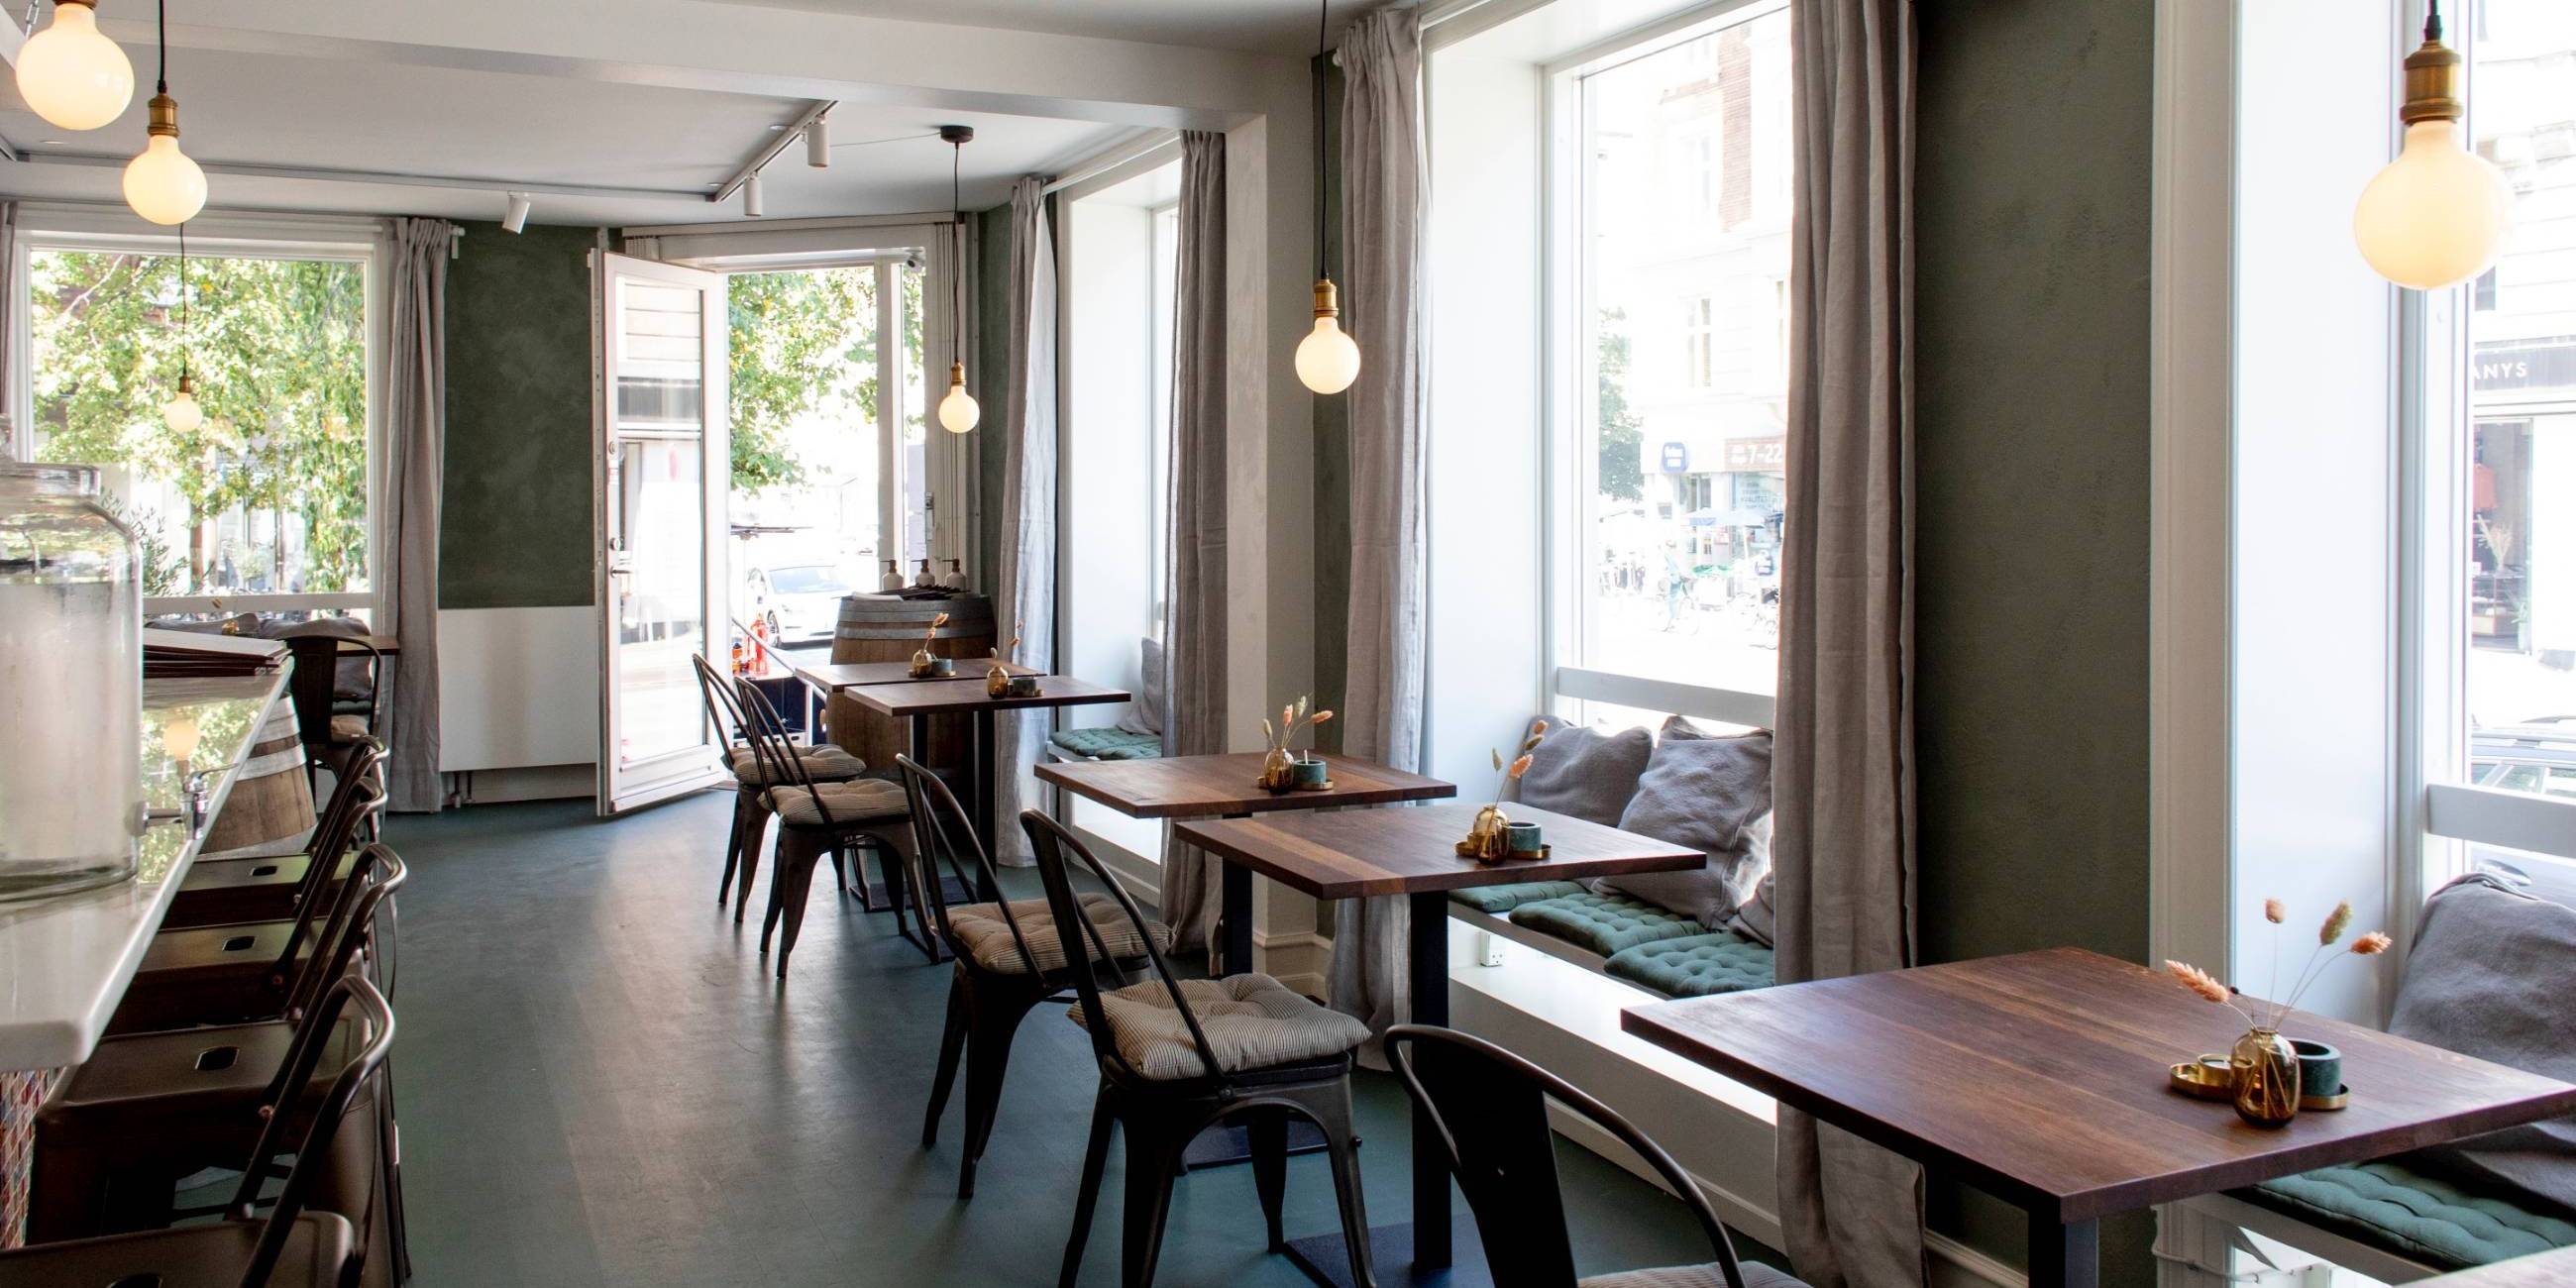 Oluf’s Taverna bringer god kaffe, italienske specialiteter og middelhavsstemning til Østerbro